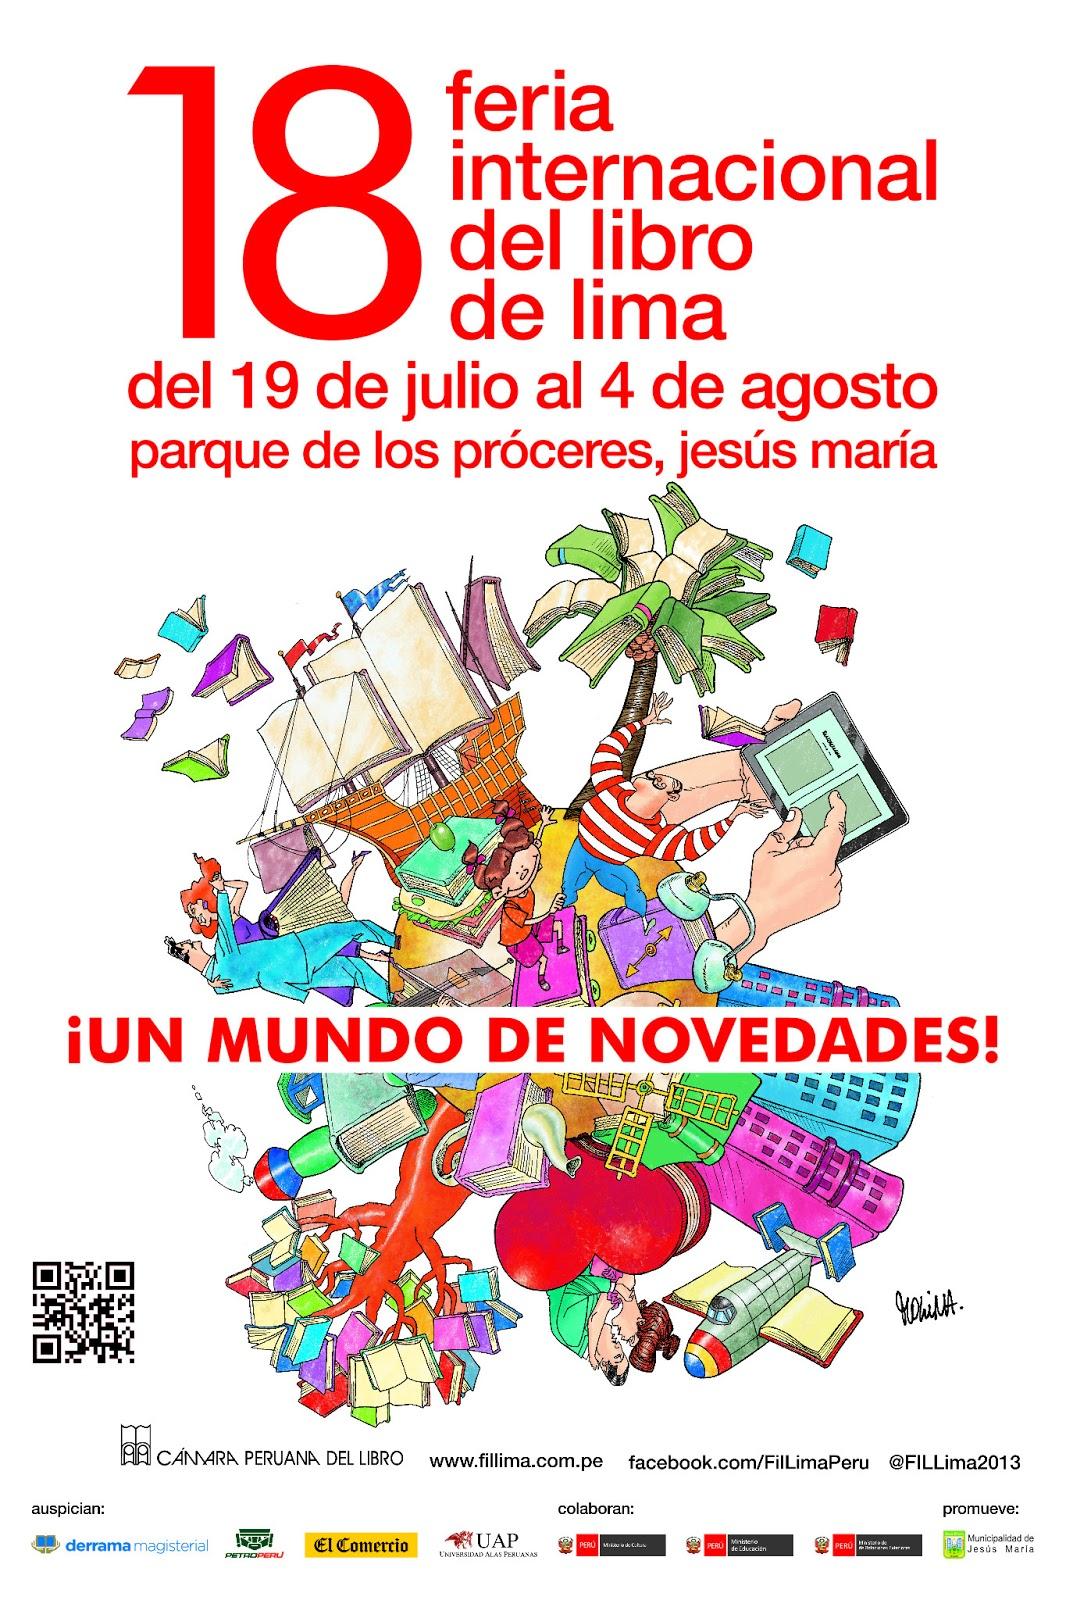 La FIL Lima 2013 cada vez más cerca